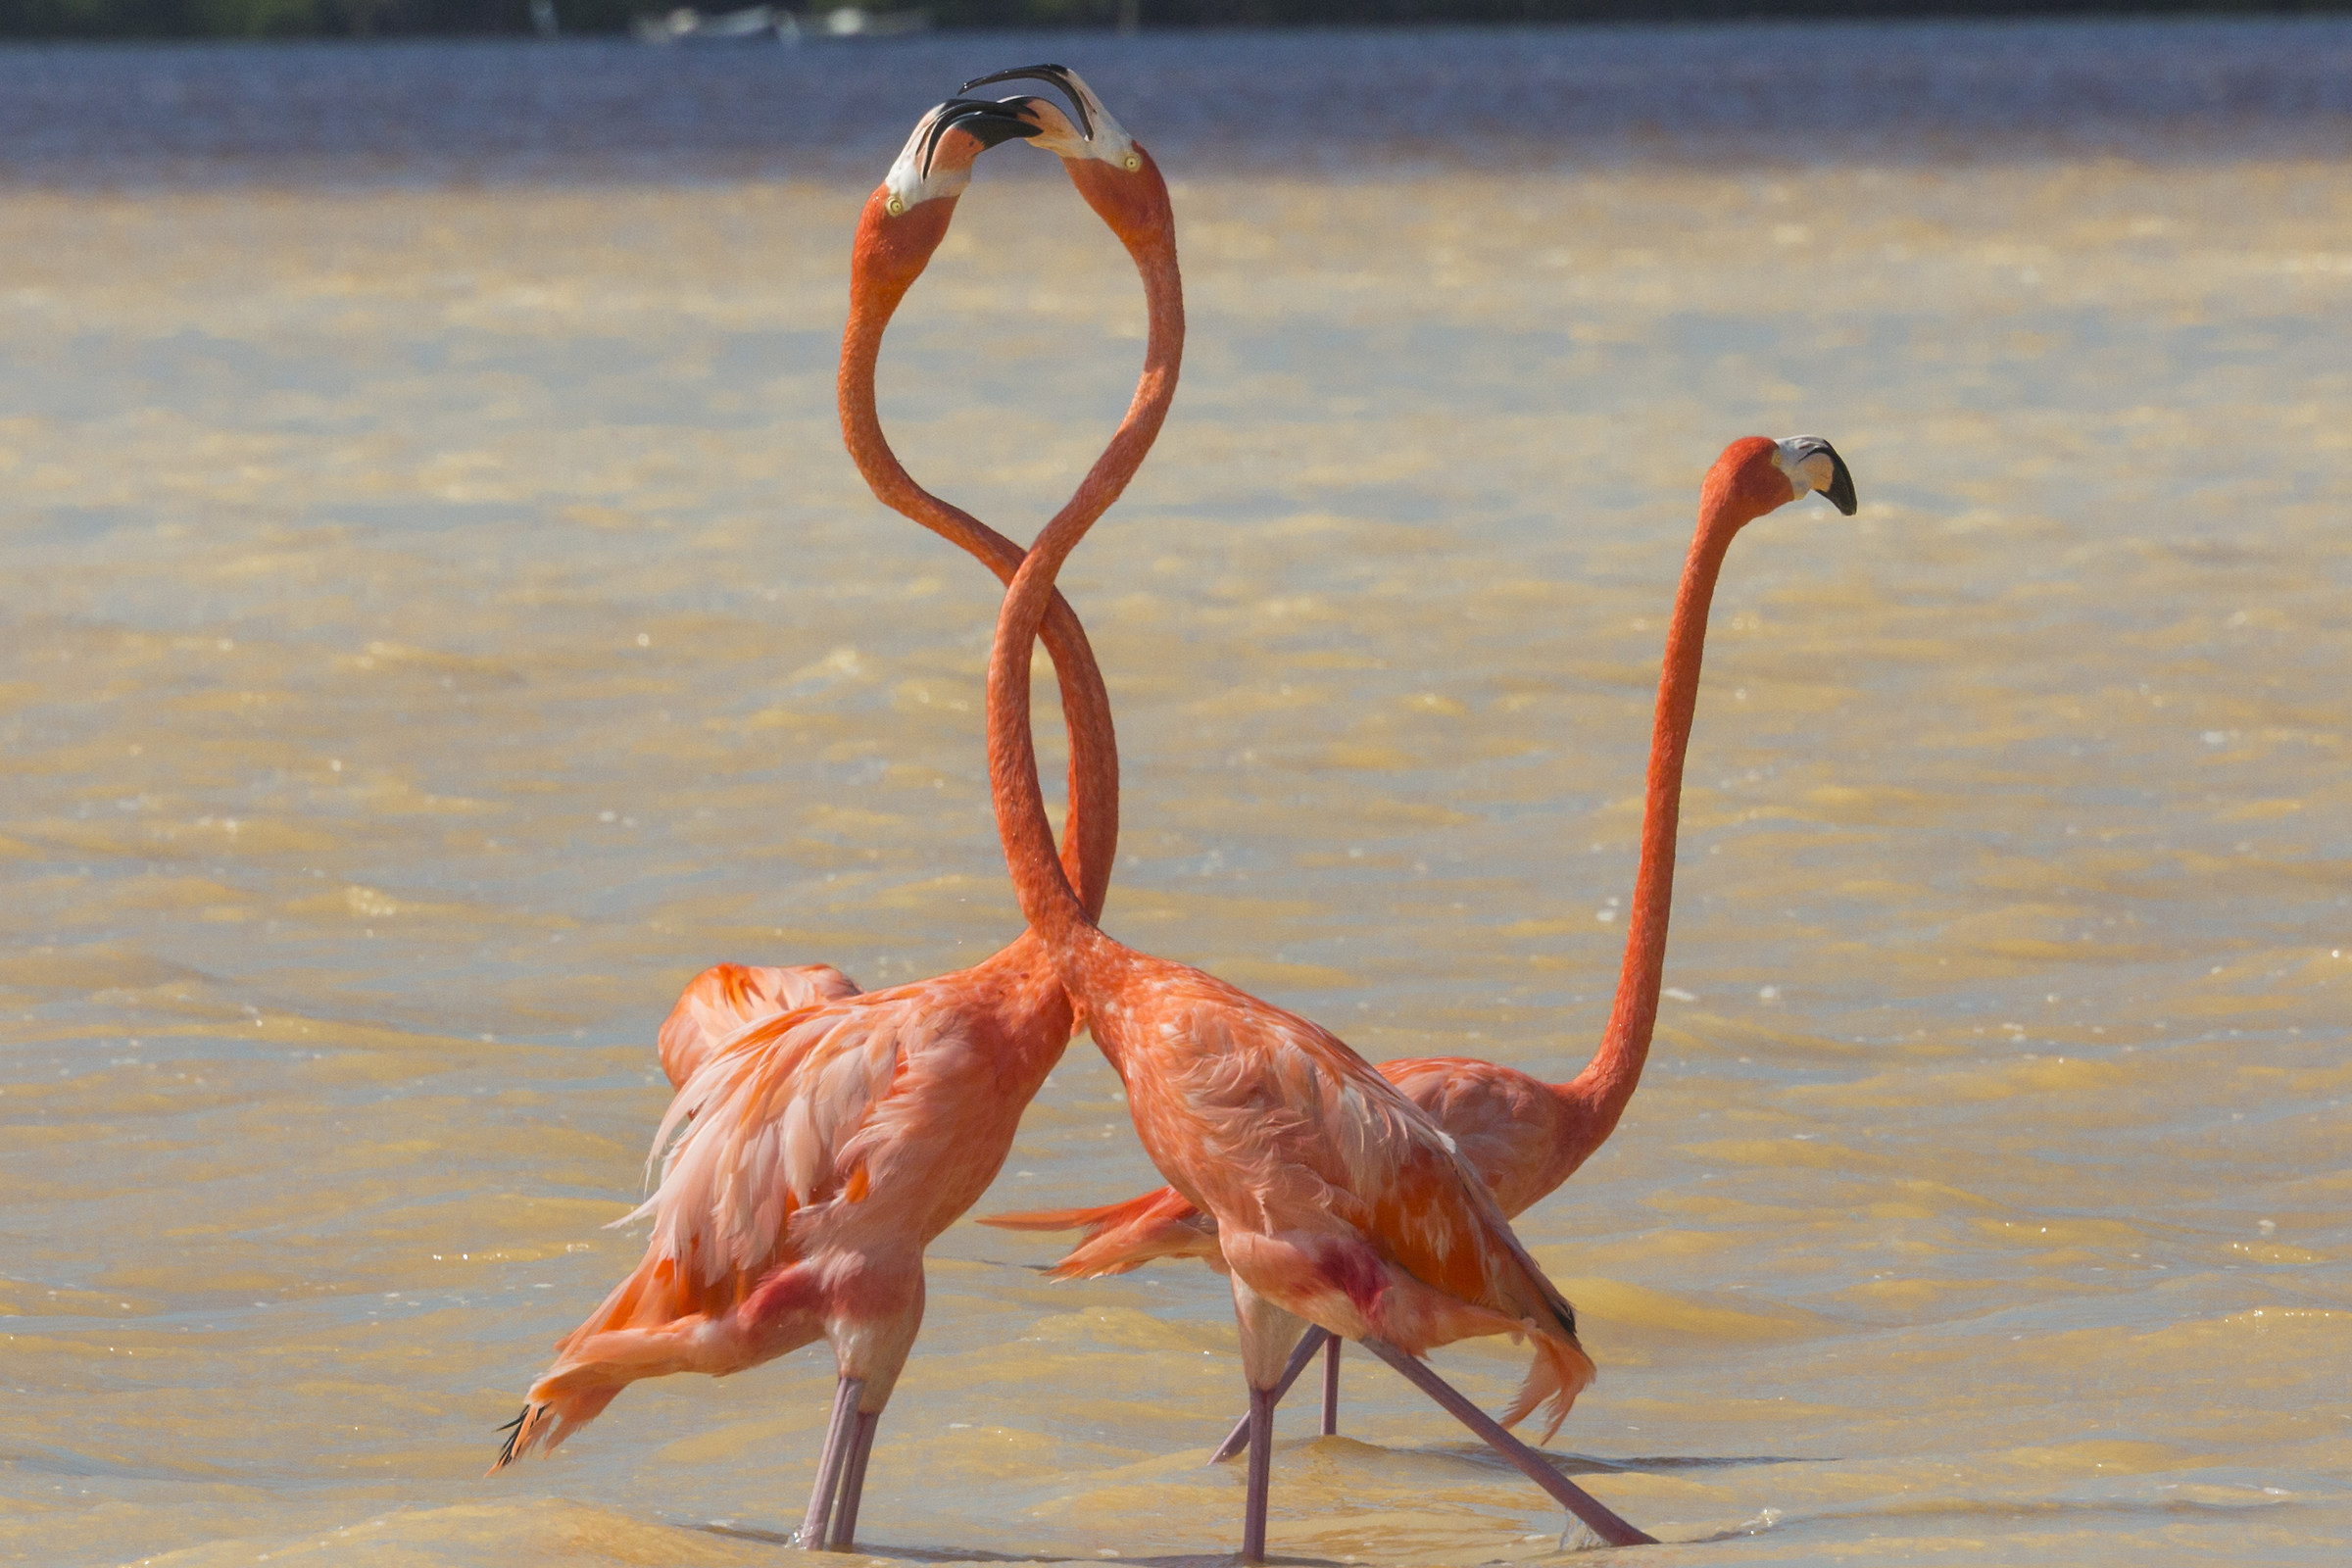 Flamingo in love...